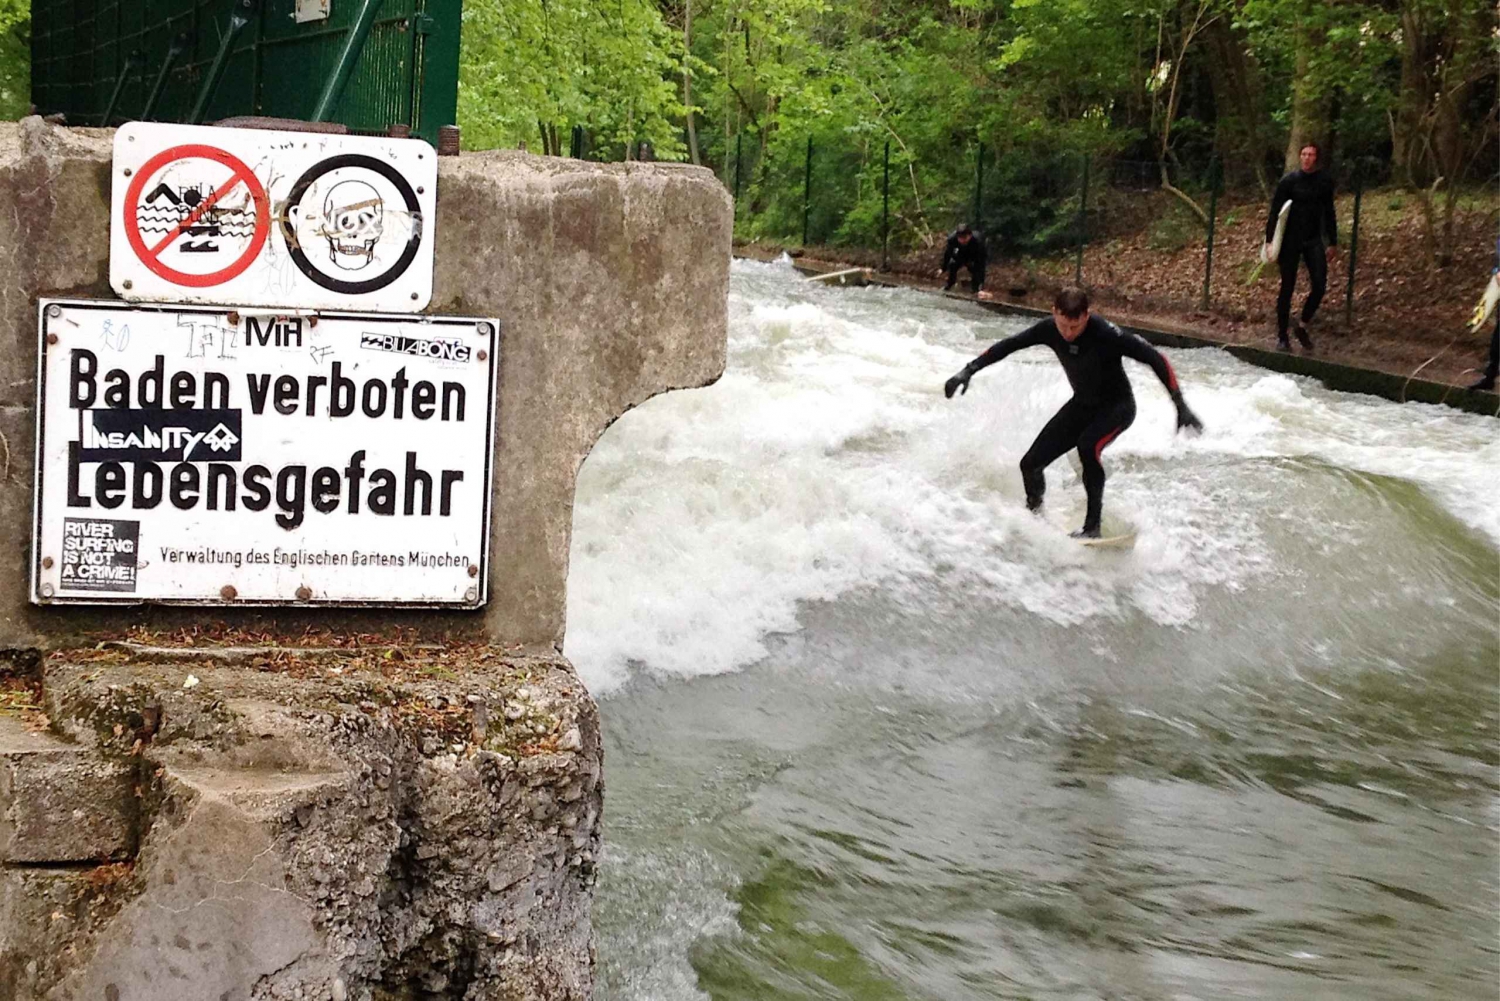 München: Den ultimative polterabend - Surf Experience Munich